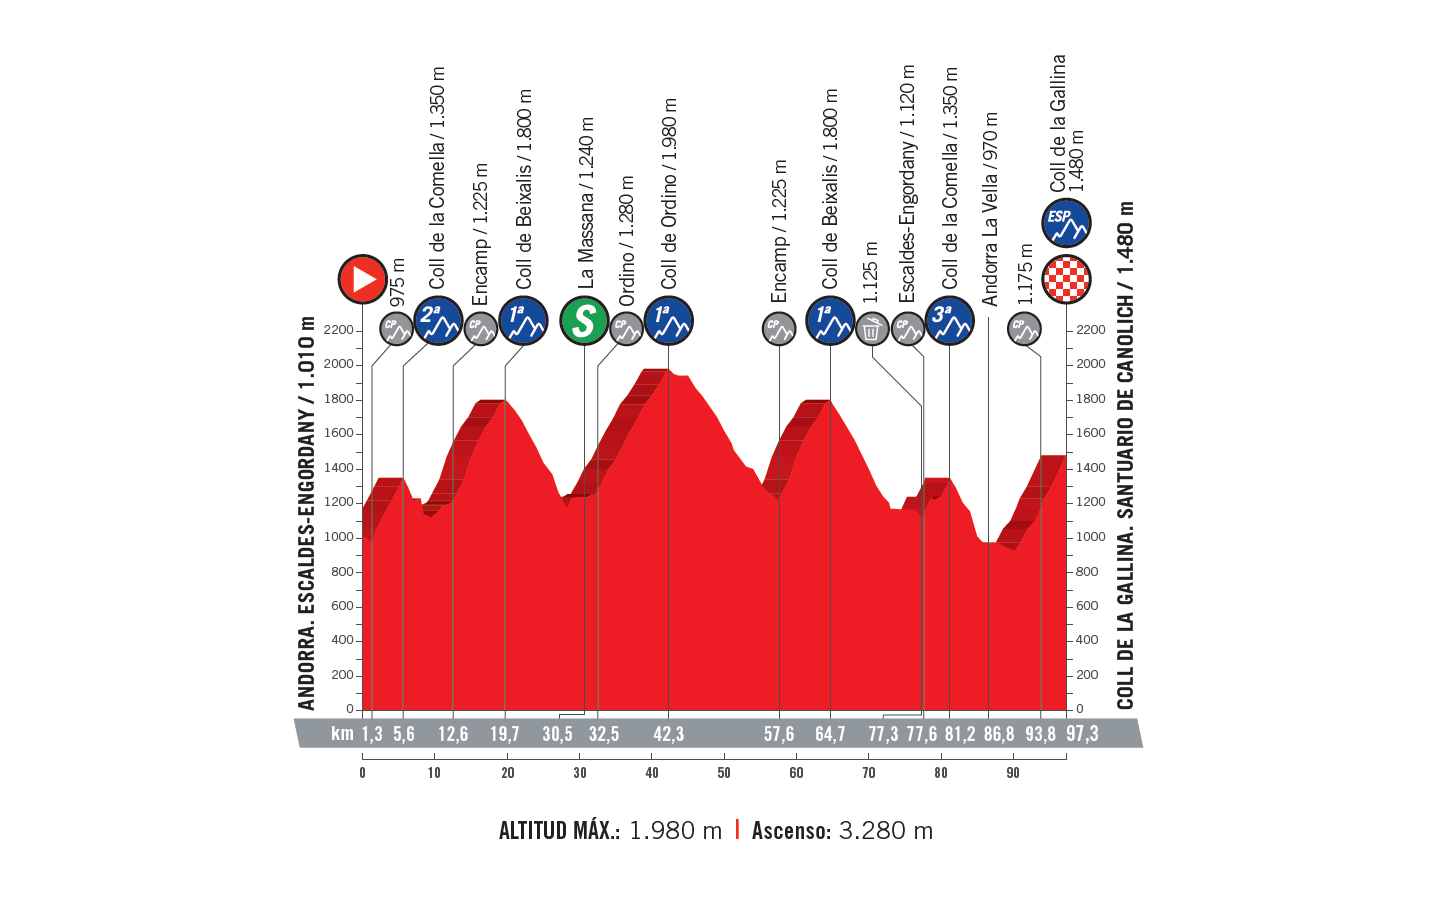 profil 20. etapu Vuelta a Espana 2018